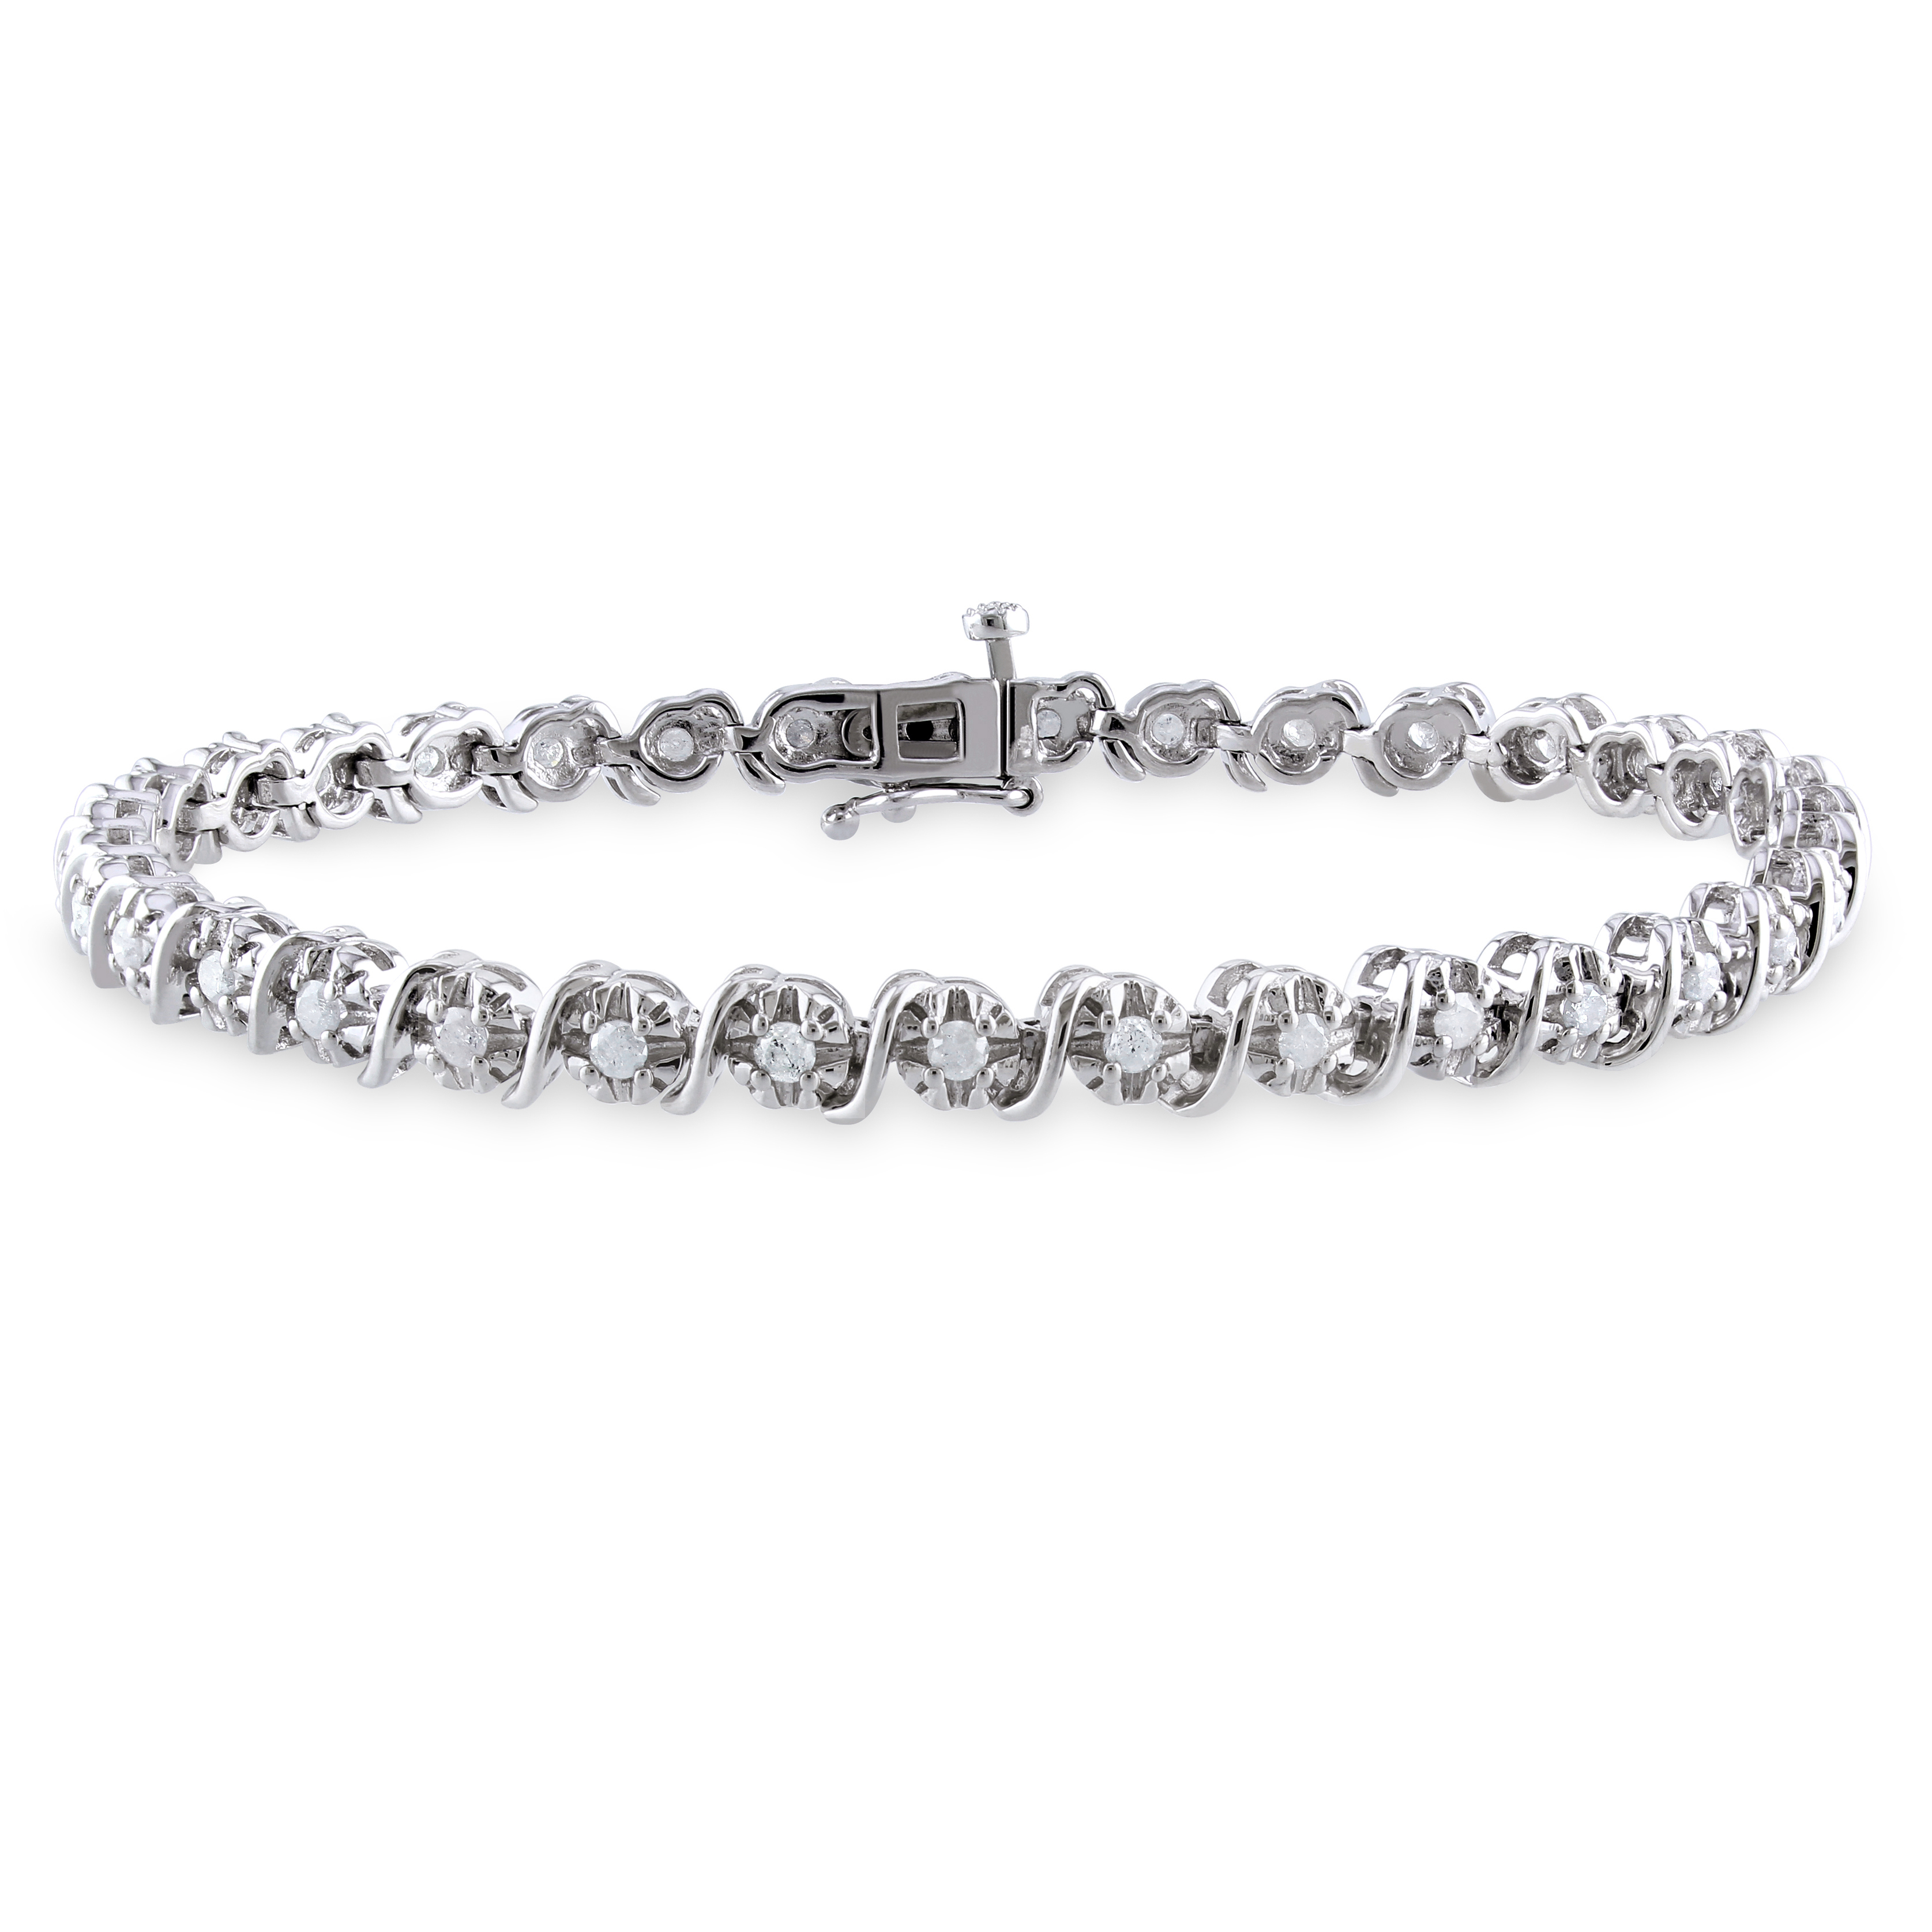 1 CT TW Diamond S-Shape Bracelet in Sterling Silver - 7.25 in.